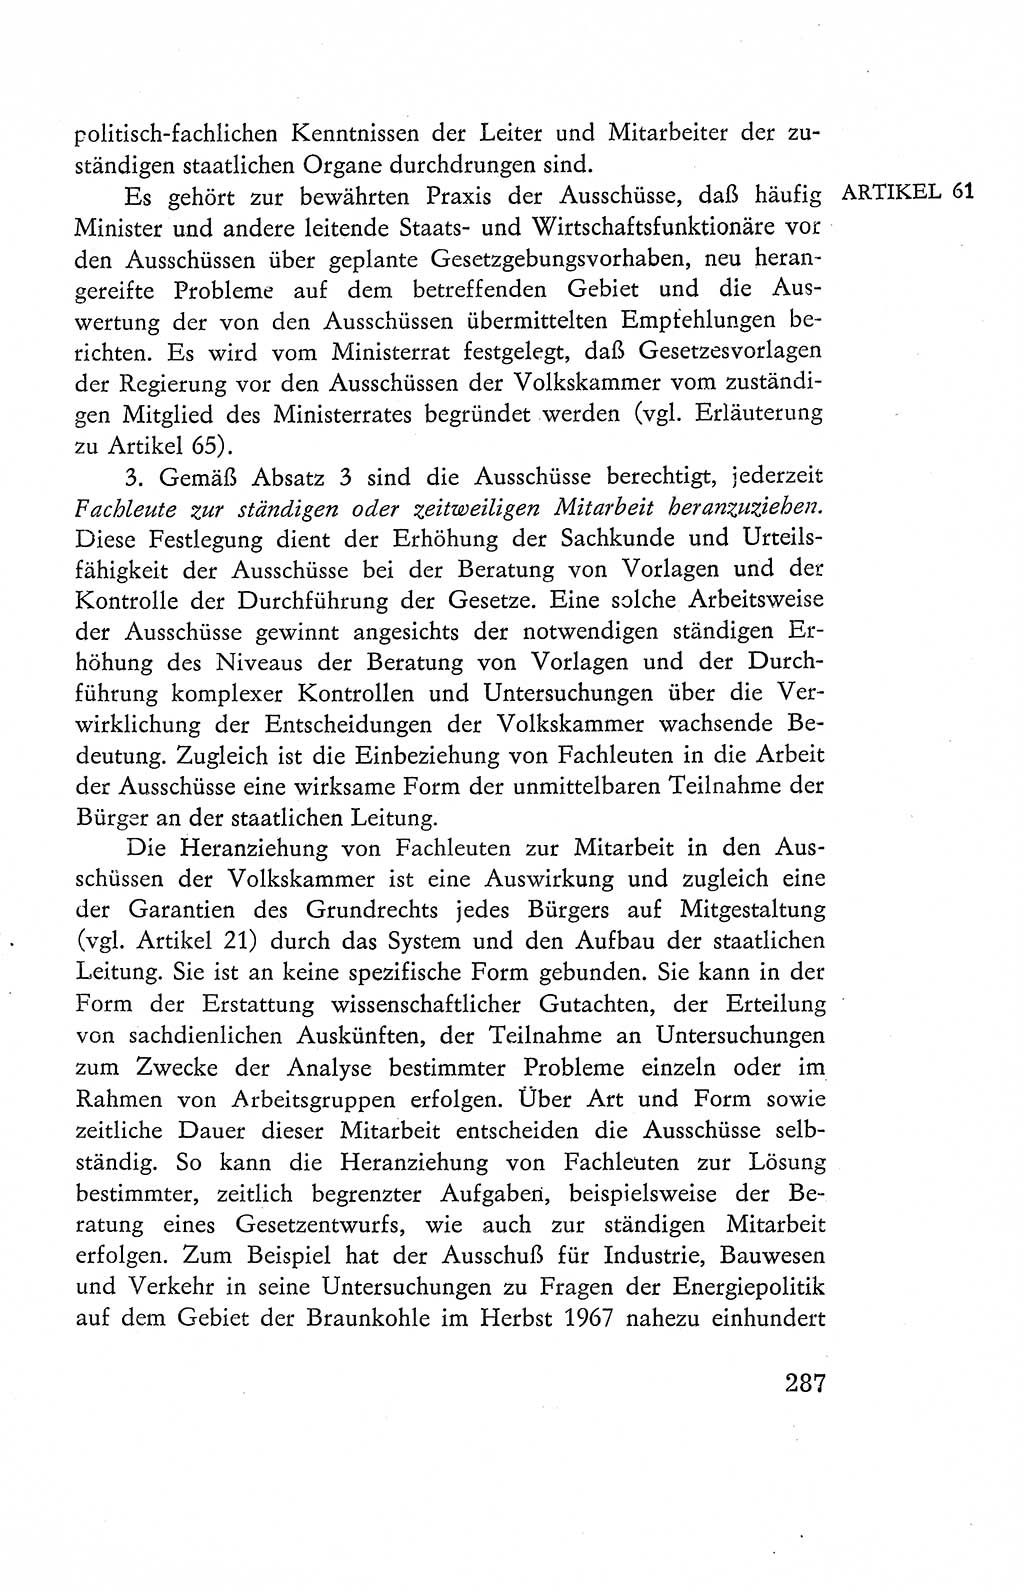 Verfassung der Deutschen Demokratischen Republik (DDR), Dokumente, Kommentar 1969, Band 2, Seite 287 (Verf. DDR Dok. Komm. 1969, Bd. 2, S. 287)